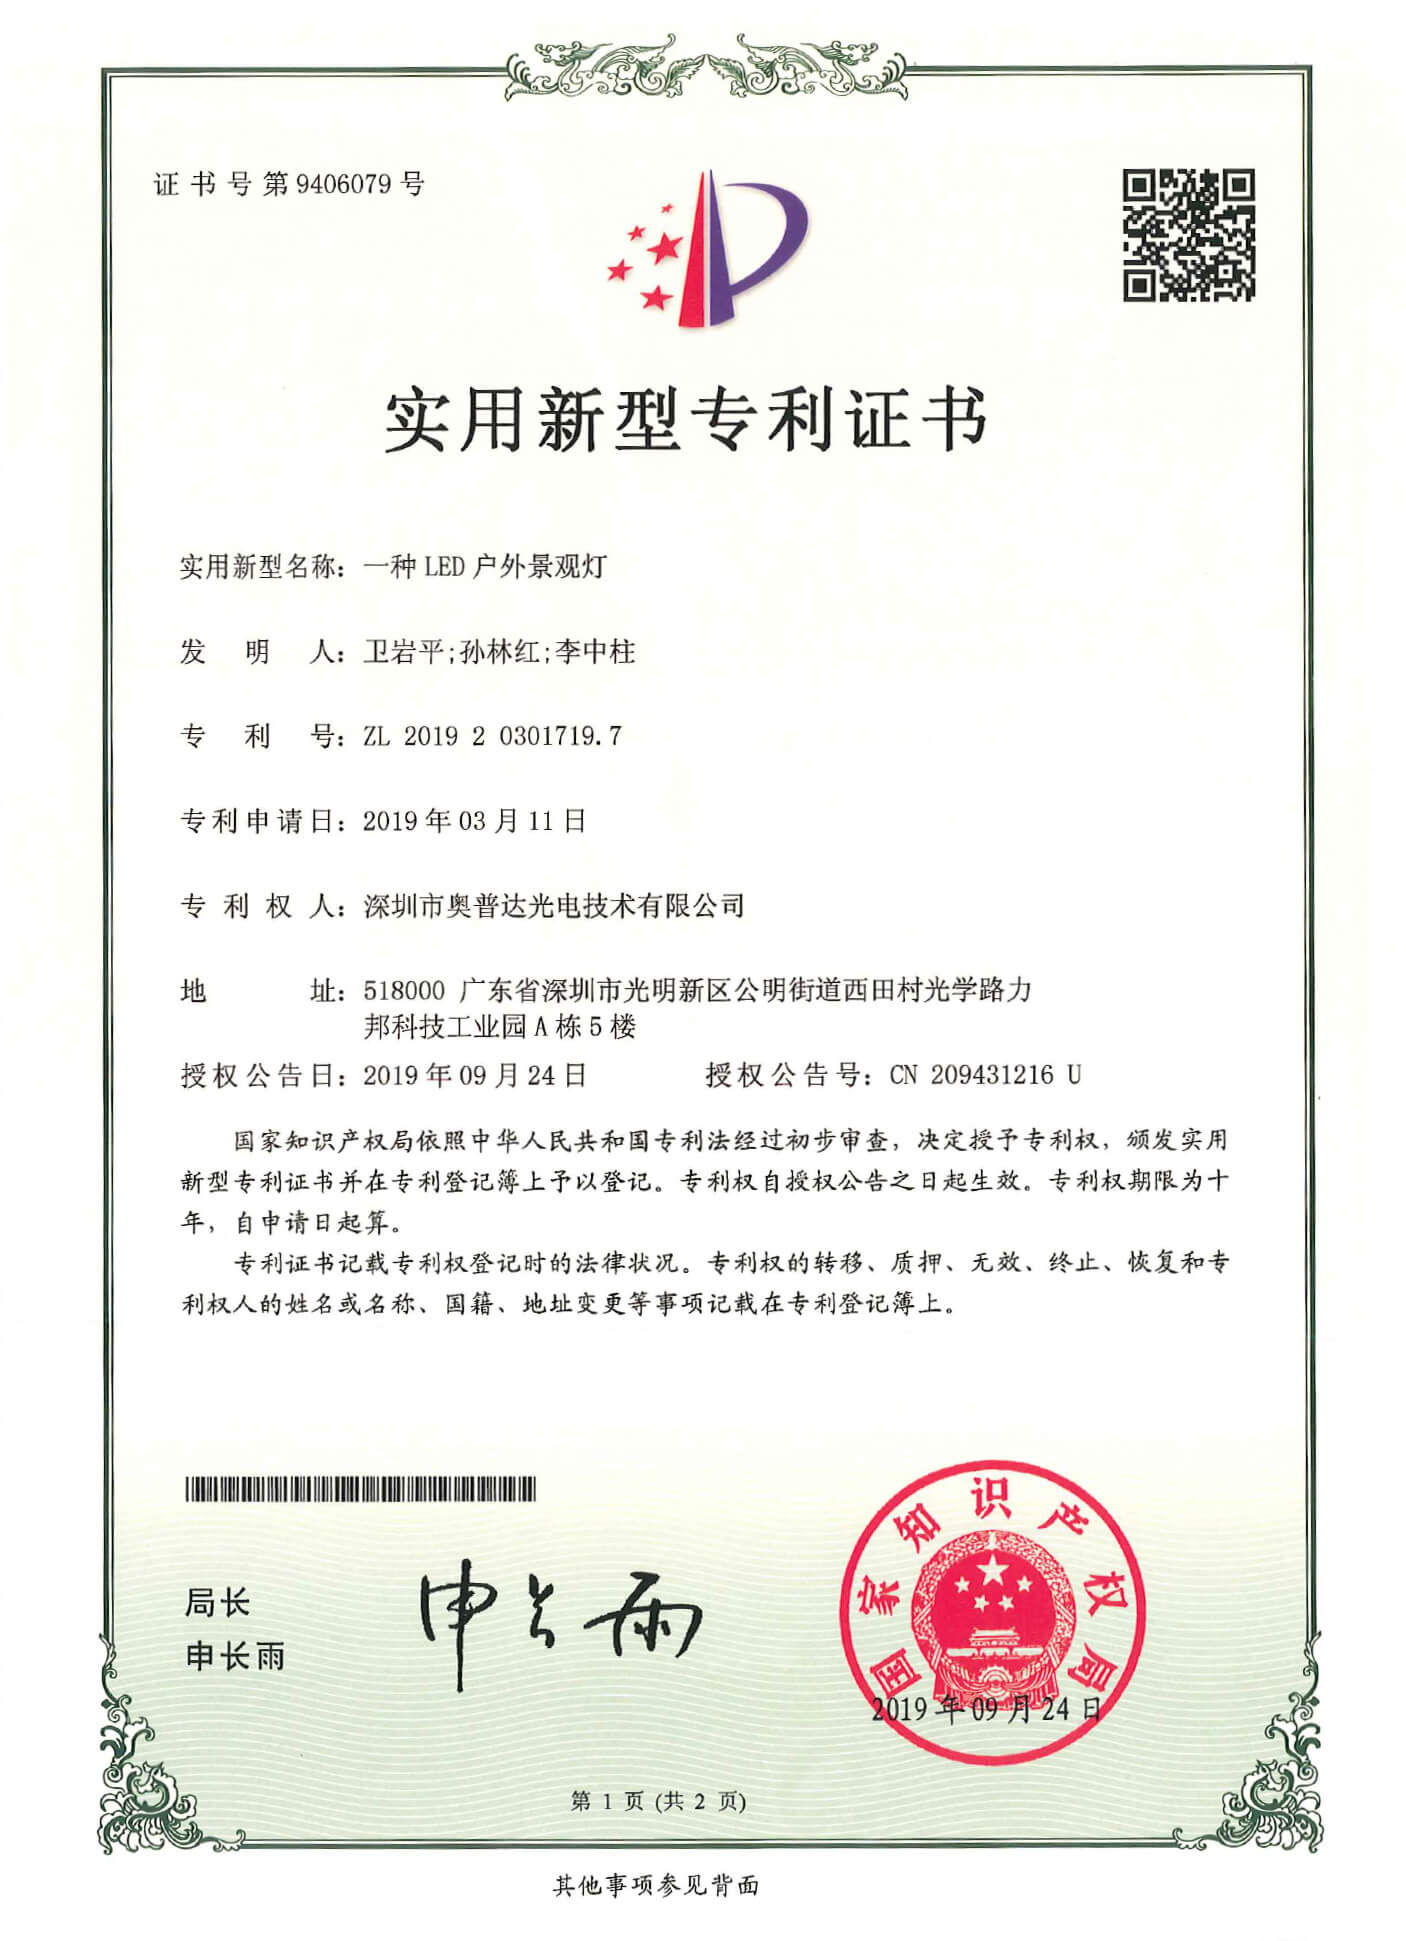 深圳市奥普达光电技术有限公司-2019203017197-专利证书